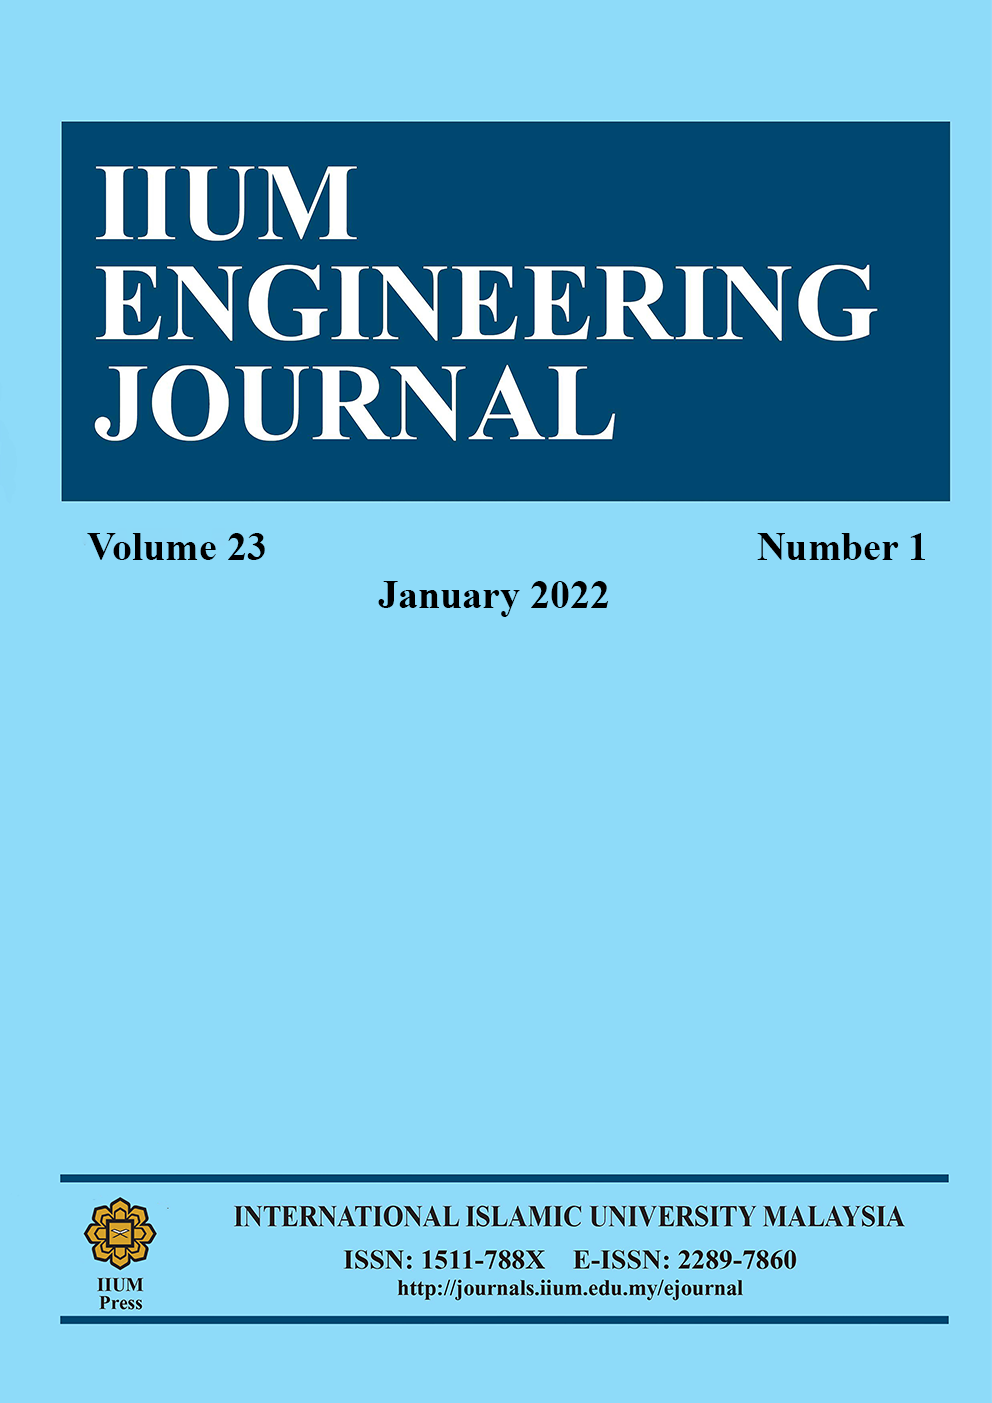 IIUM Engineering Journal Vol 23 No 1